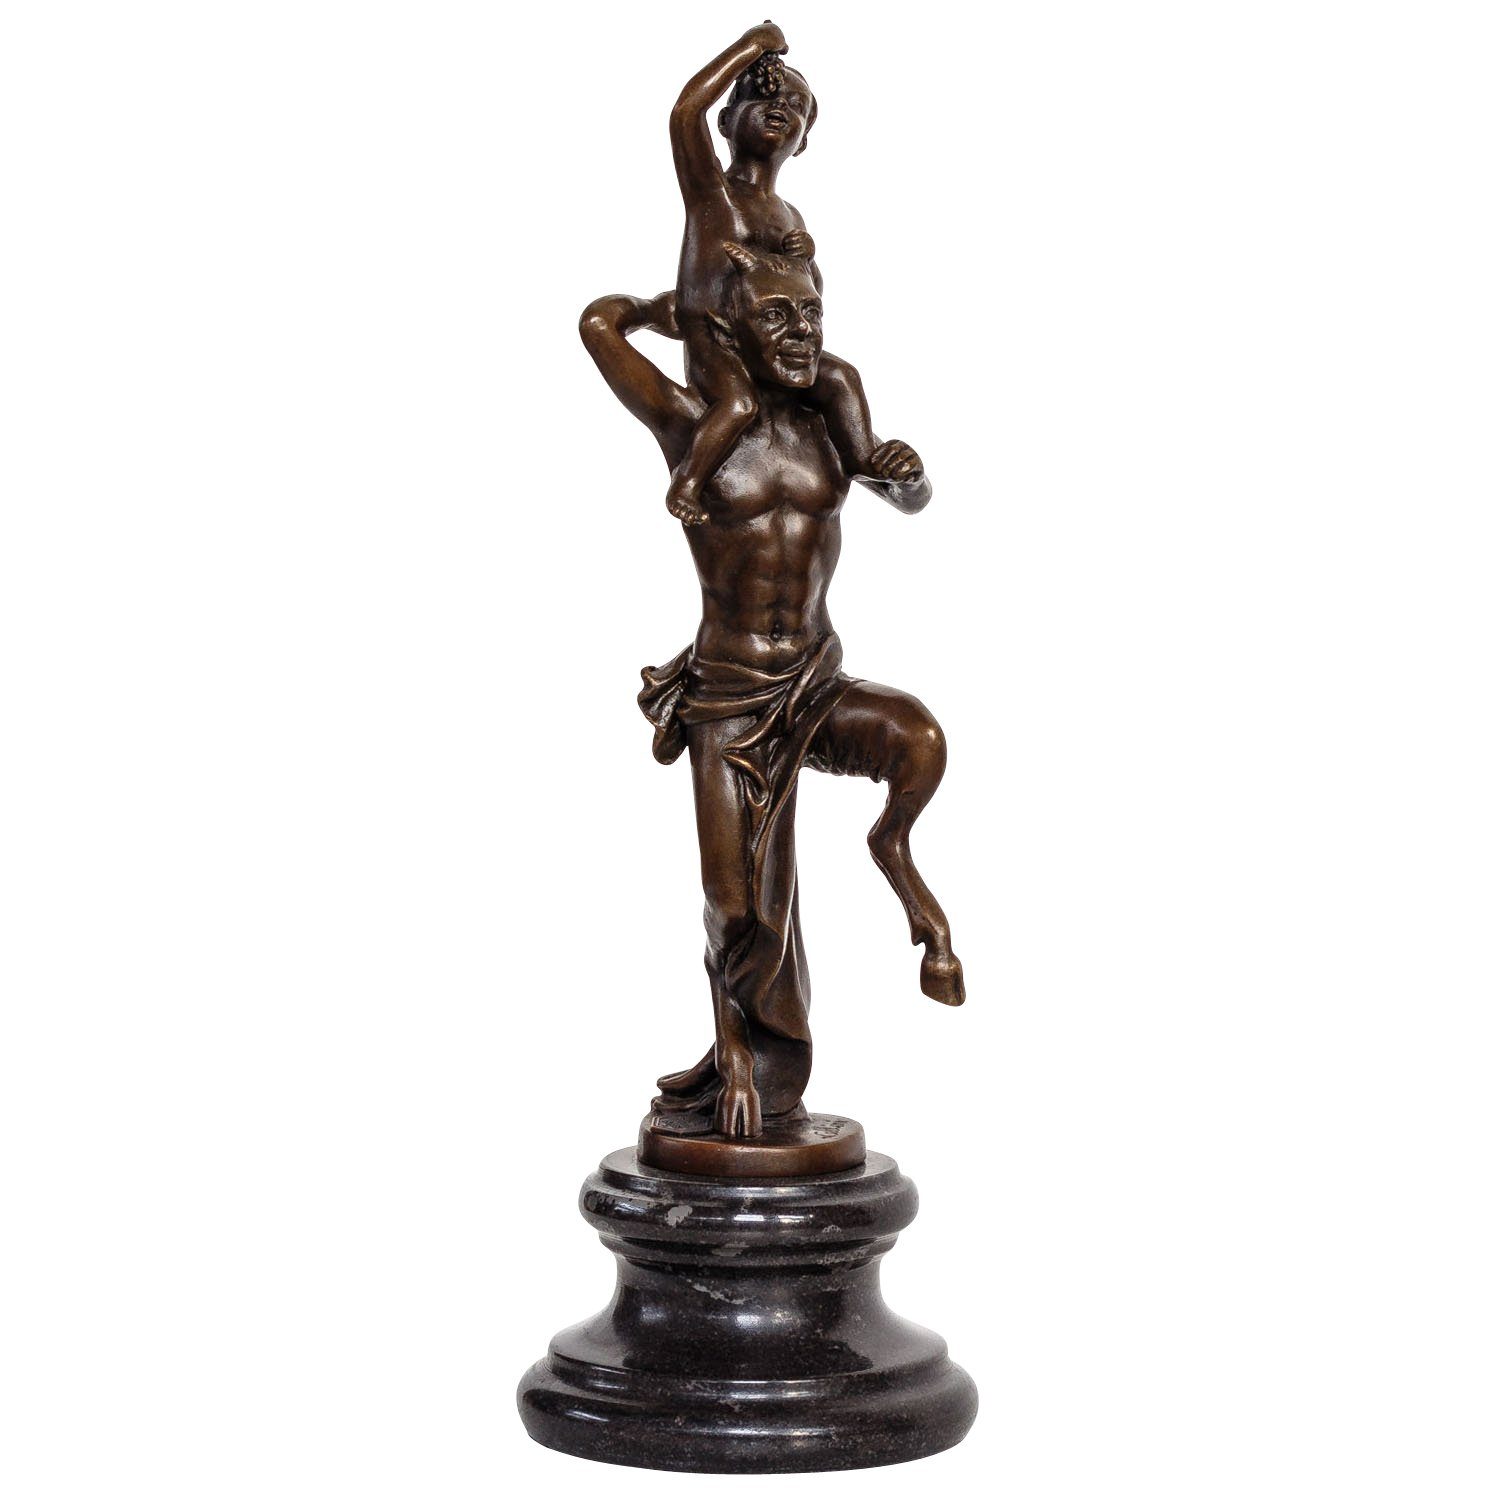 Aubaho Skulptur Wein Figur Bronzeskulptur kleiner im St Bronze Antik-Stil Faun Bacchus